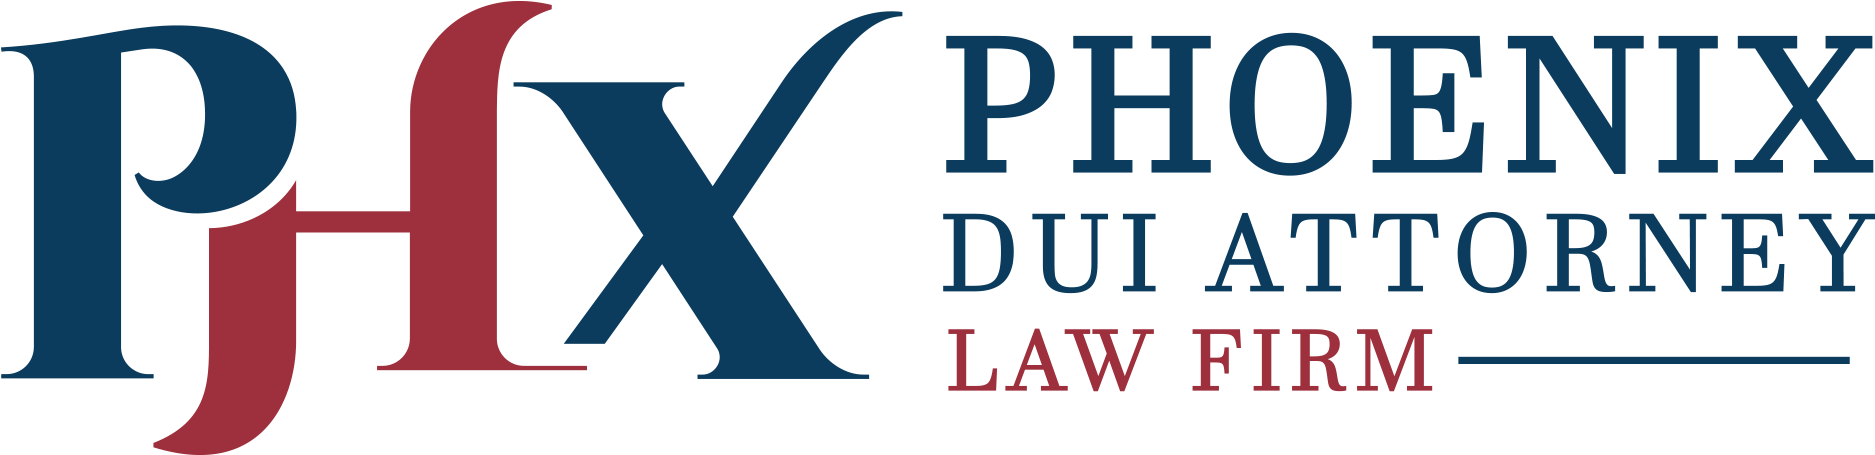 Phoenix Dui Attorney-logo - Lawyer (2000x600)